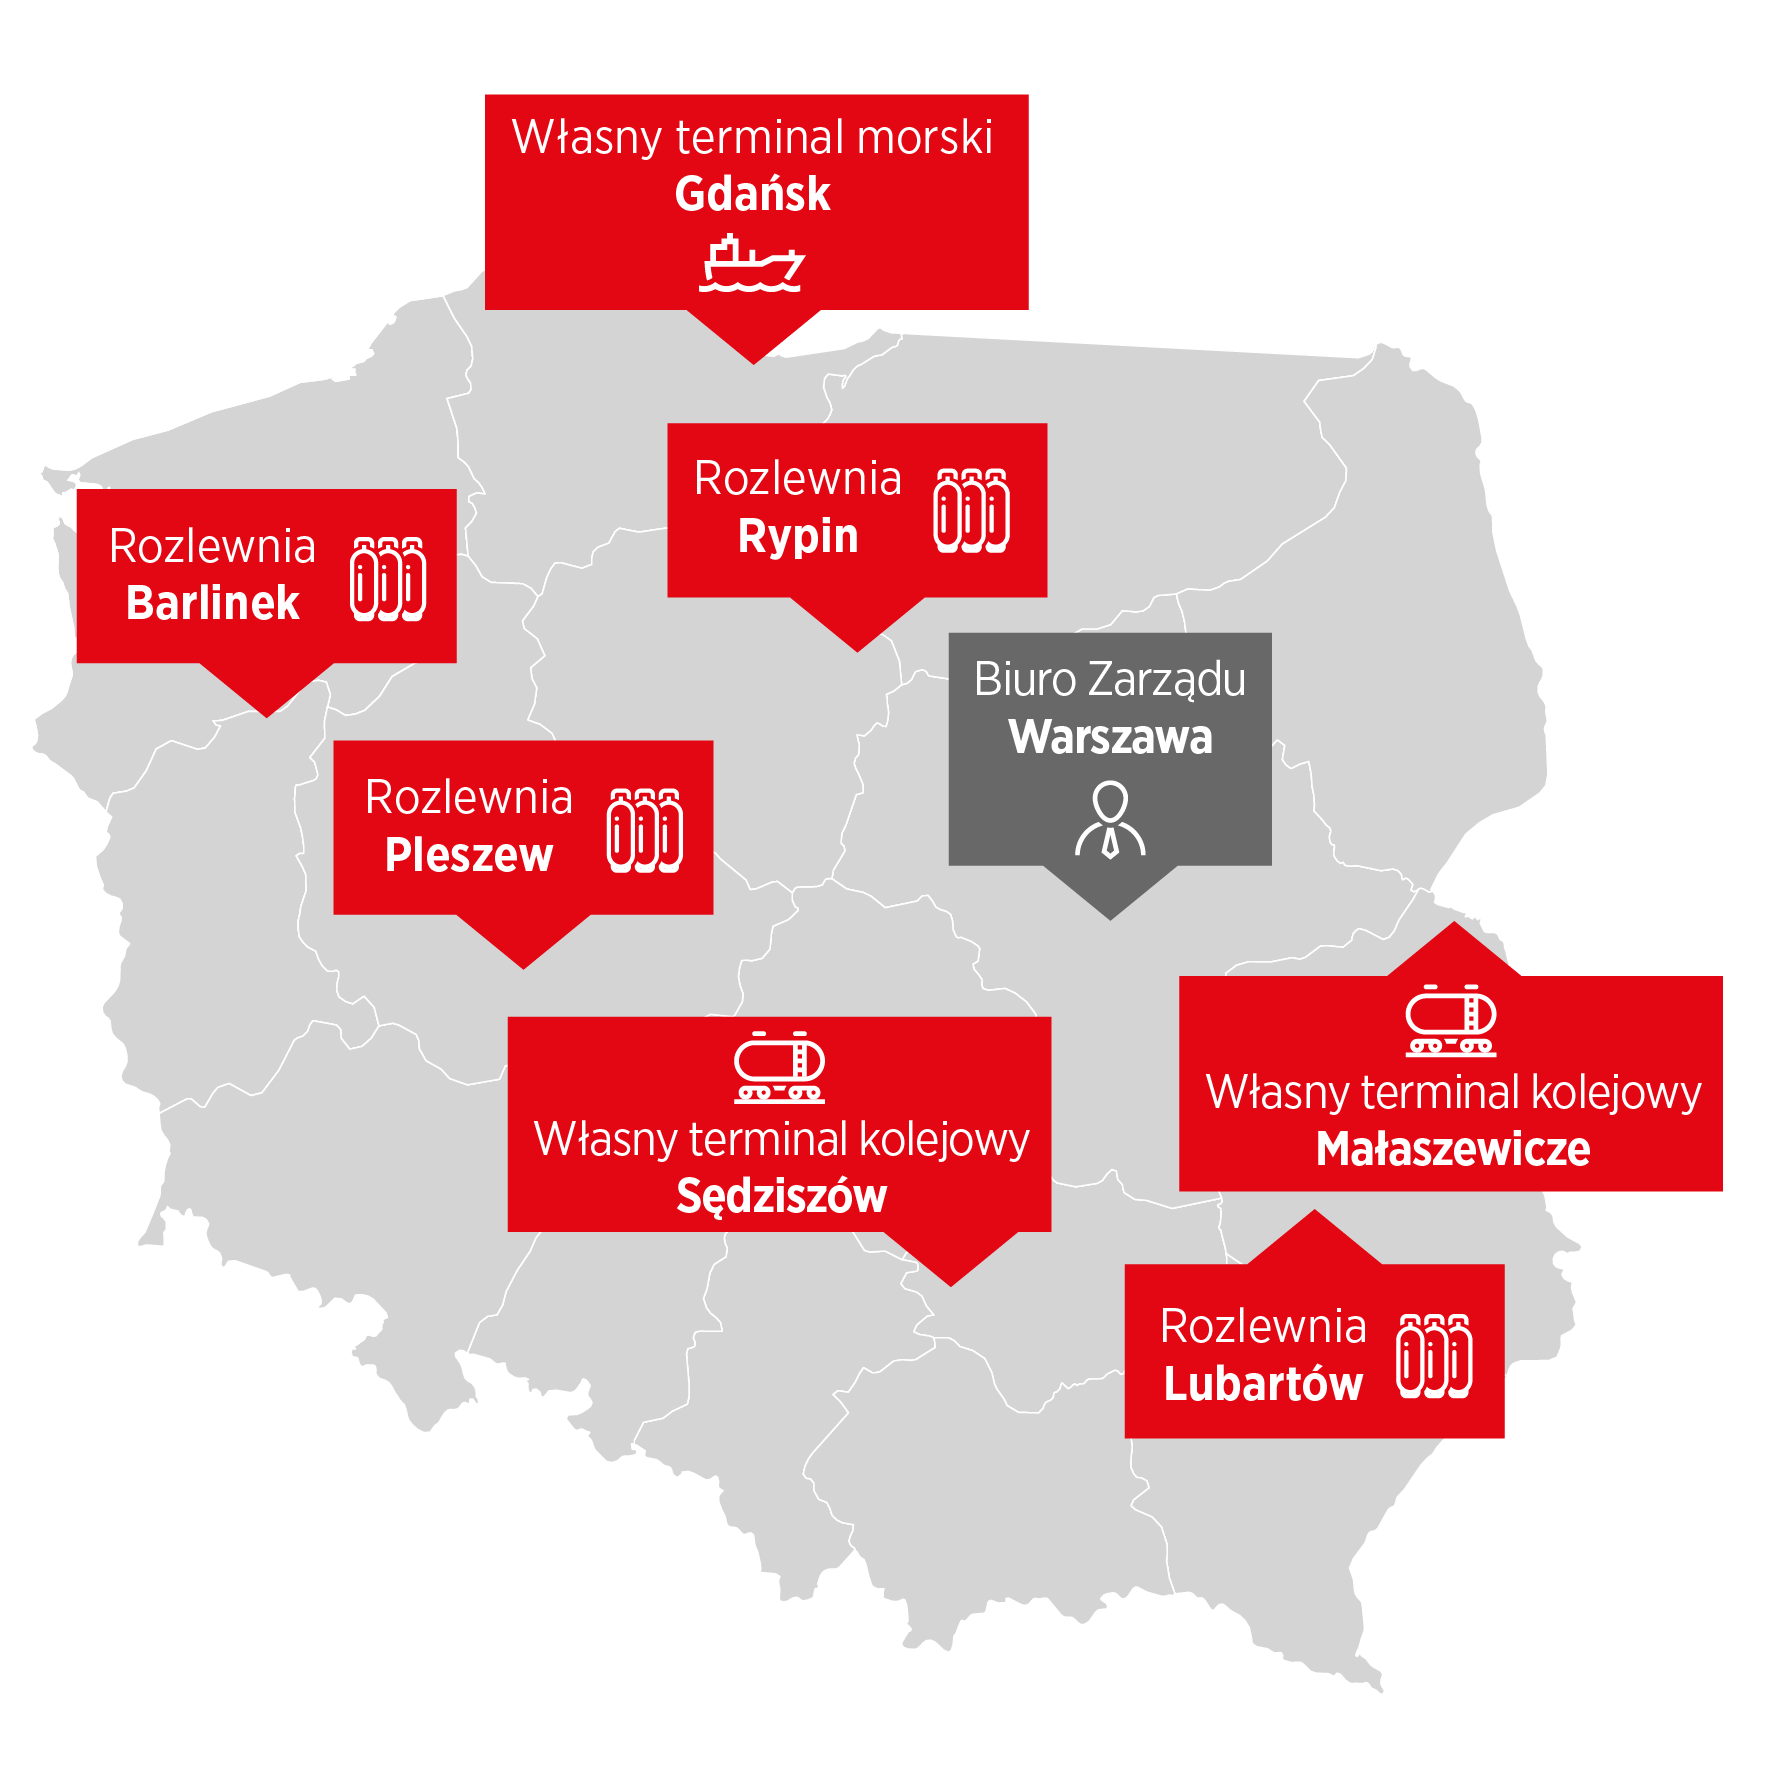 Jesteśmy liderem rynku gazu płynnego w Polsce. Posiadamy własną, nowoczesną infrastrukturę: trzy terminale przeładunkowe, pięć rozlewni gazu płynnego i flotę specjalistycznych cystern do przewozu LPG i LNG. Terminale: morski w Gdańsku i kolejowe w Małaszewiczach oraz Sędziszowie zapewniają nam elastyczność w wyborze dostawców. Dysponujemy rozbudowaną siecią dilerów, baz dystrybucyjnych i ponad 20 tysiącami punktów sprzedaży na terenie całej Polski. 